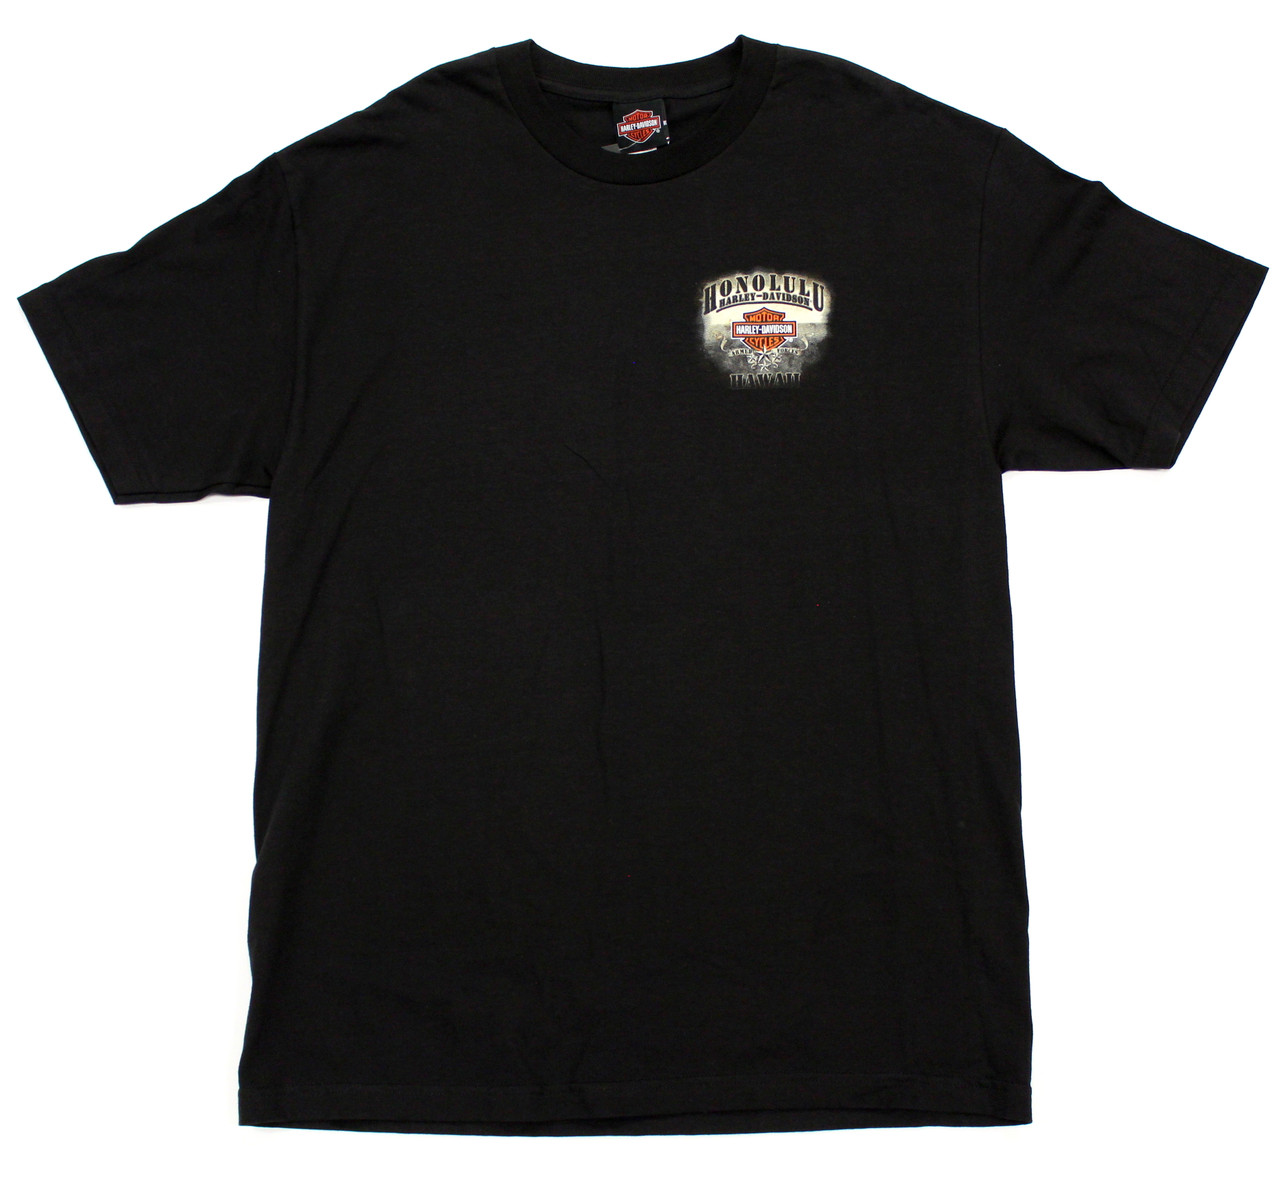 Armed Forces Harley-Davidson T-shirt